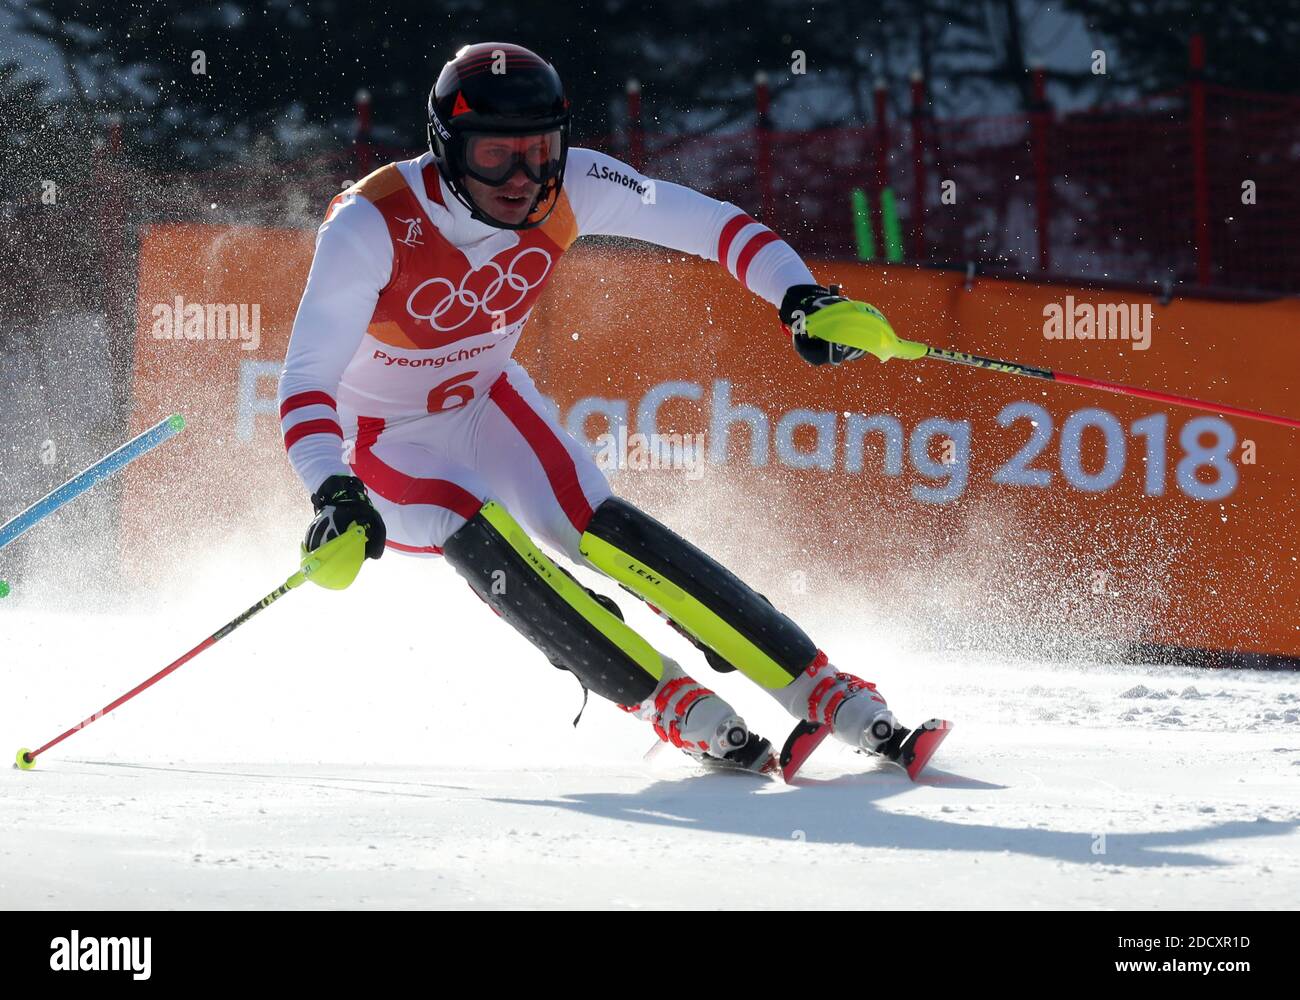 Michael MATT, d'Autriche, pendant le slalom masculin aux Jeux olympiques d'hiver de 2018 à Pyeongchang, Corée du Sud, le 22 février 2018. Photo de Guiliano Bevilacqua/ABACAPRESS.COM Banque D'Images